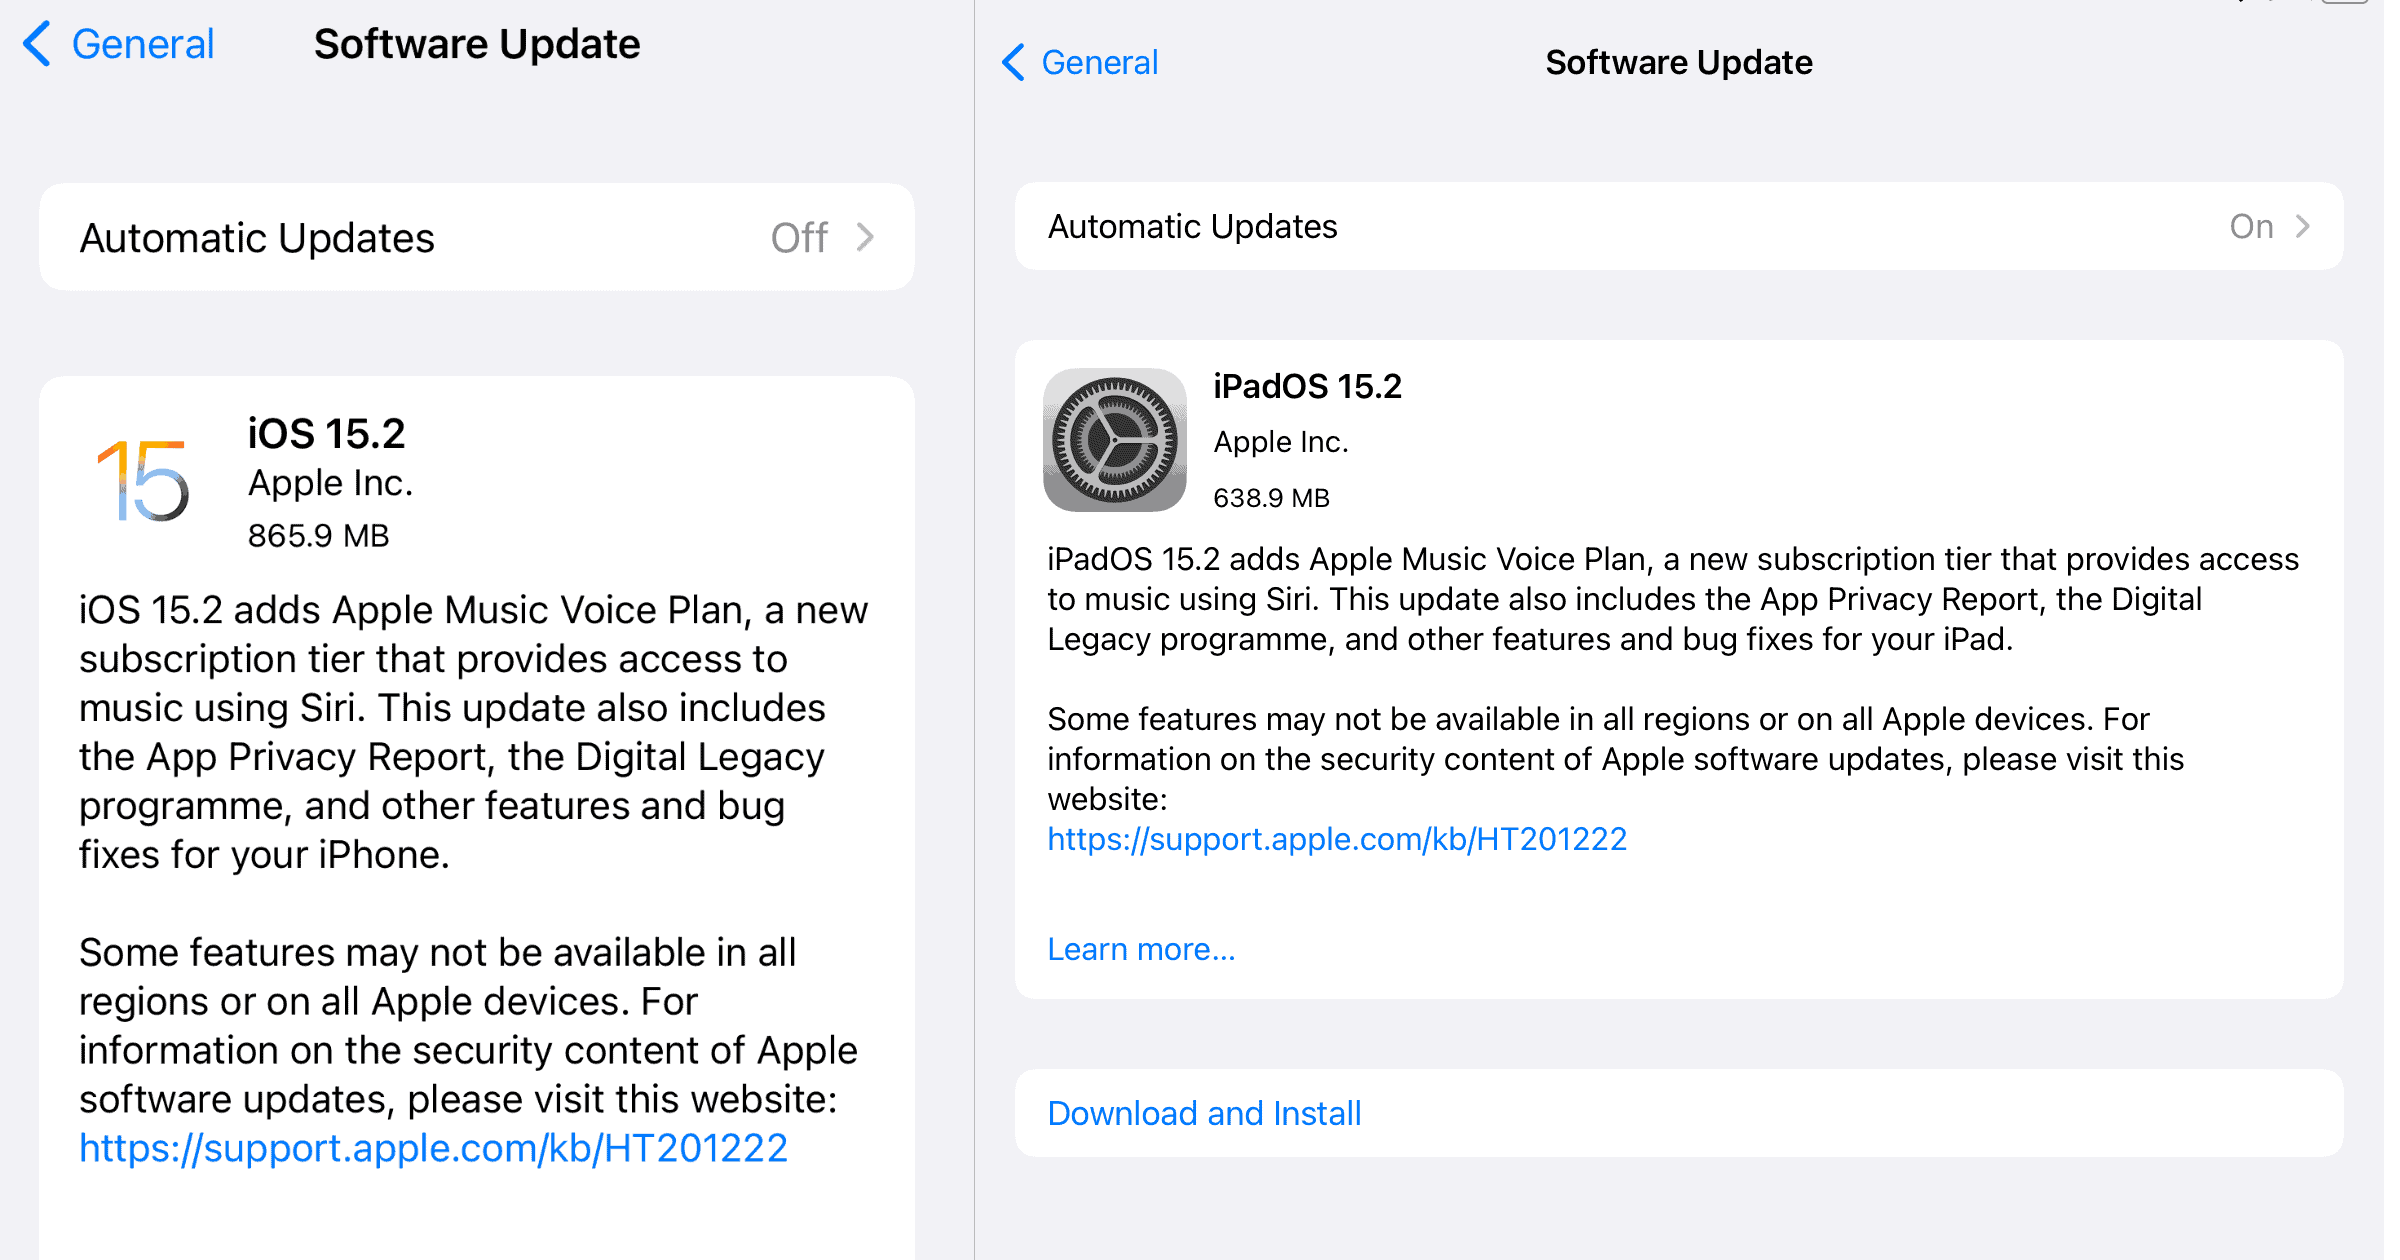 iOS iPad OS 15.2 update